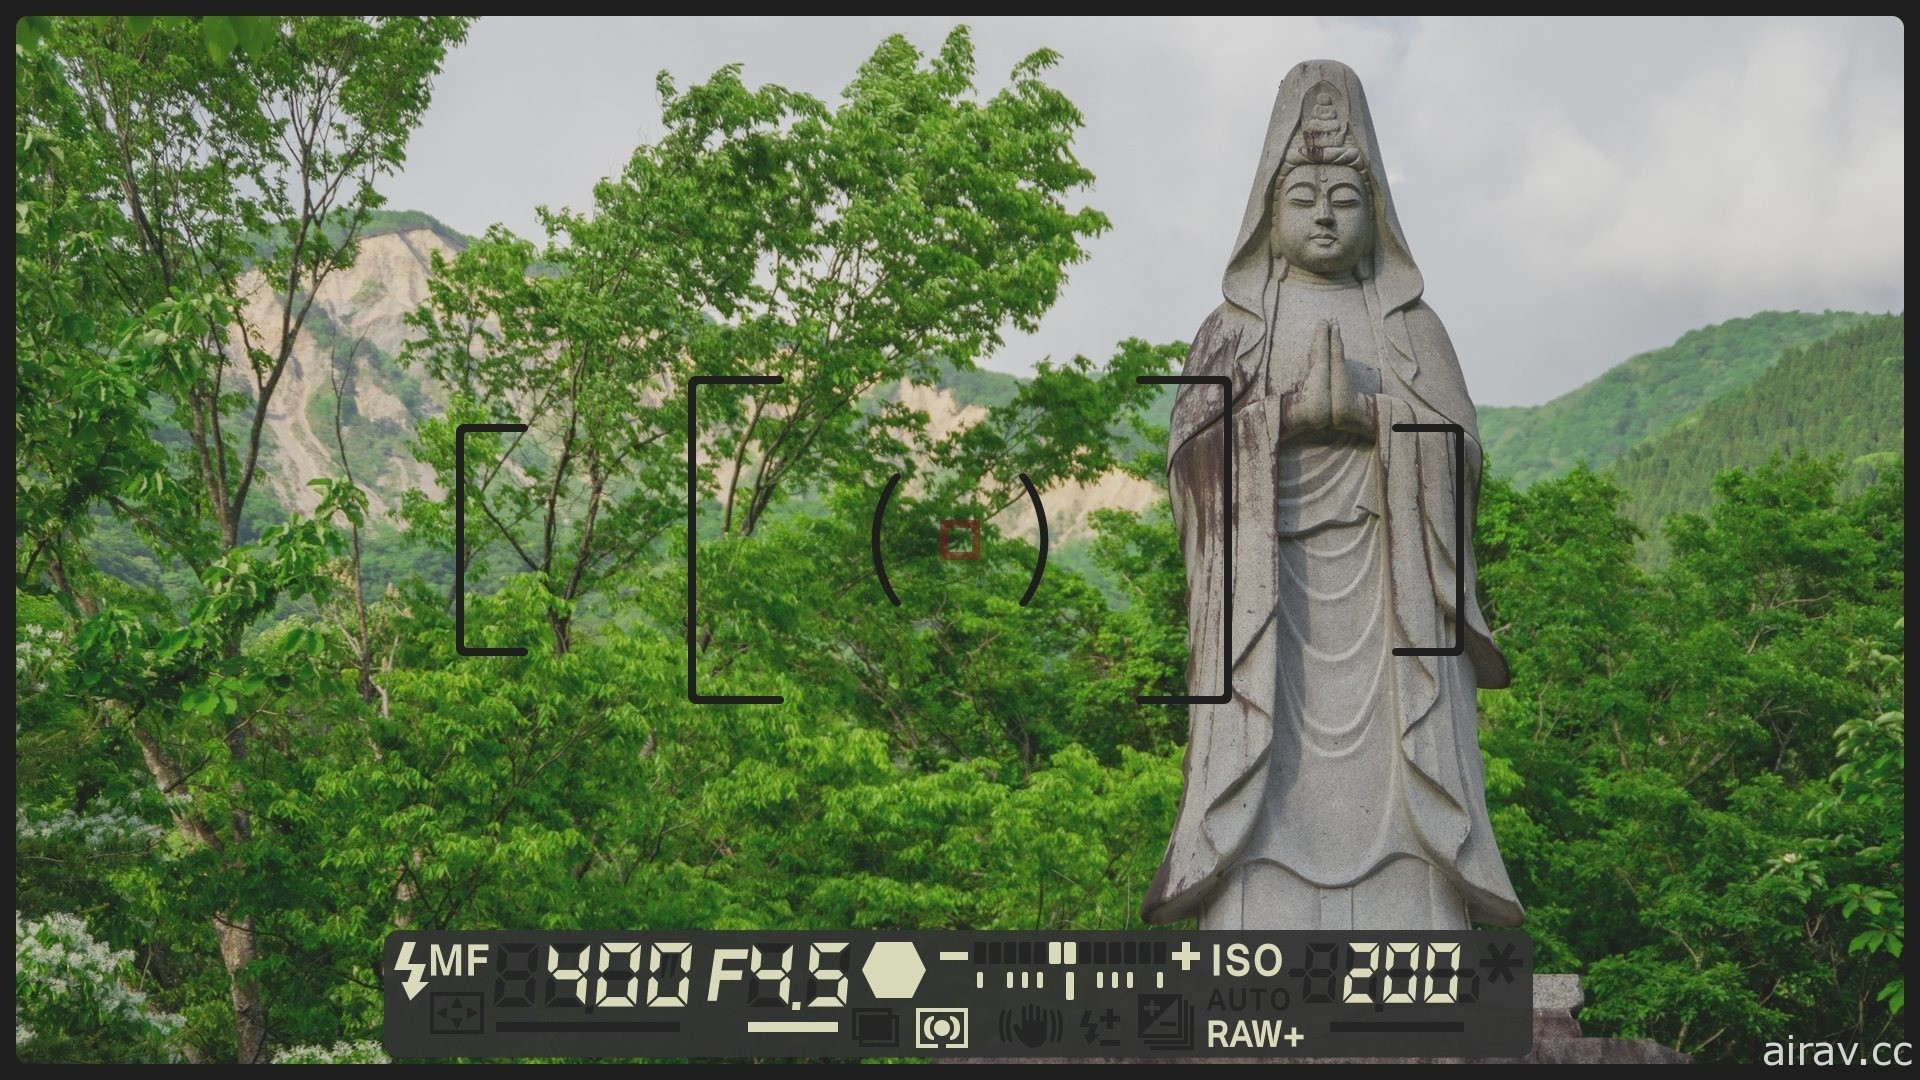 【試玩】《風雨來記 4》透過 360 度環景呈現騎乘光景 體驗 “日本中心” 岐阜的魅力